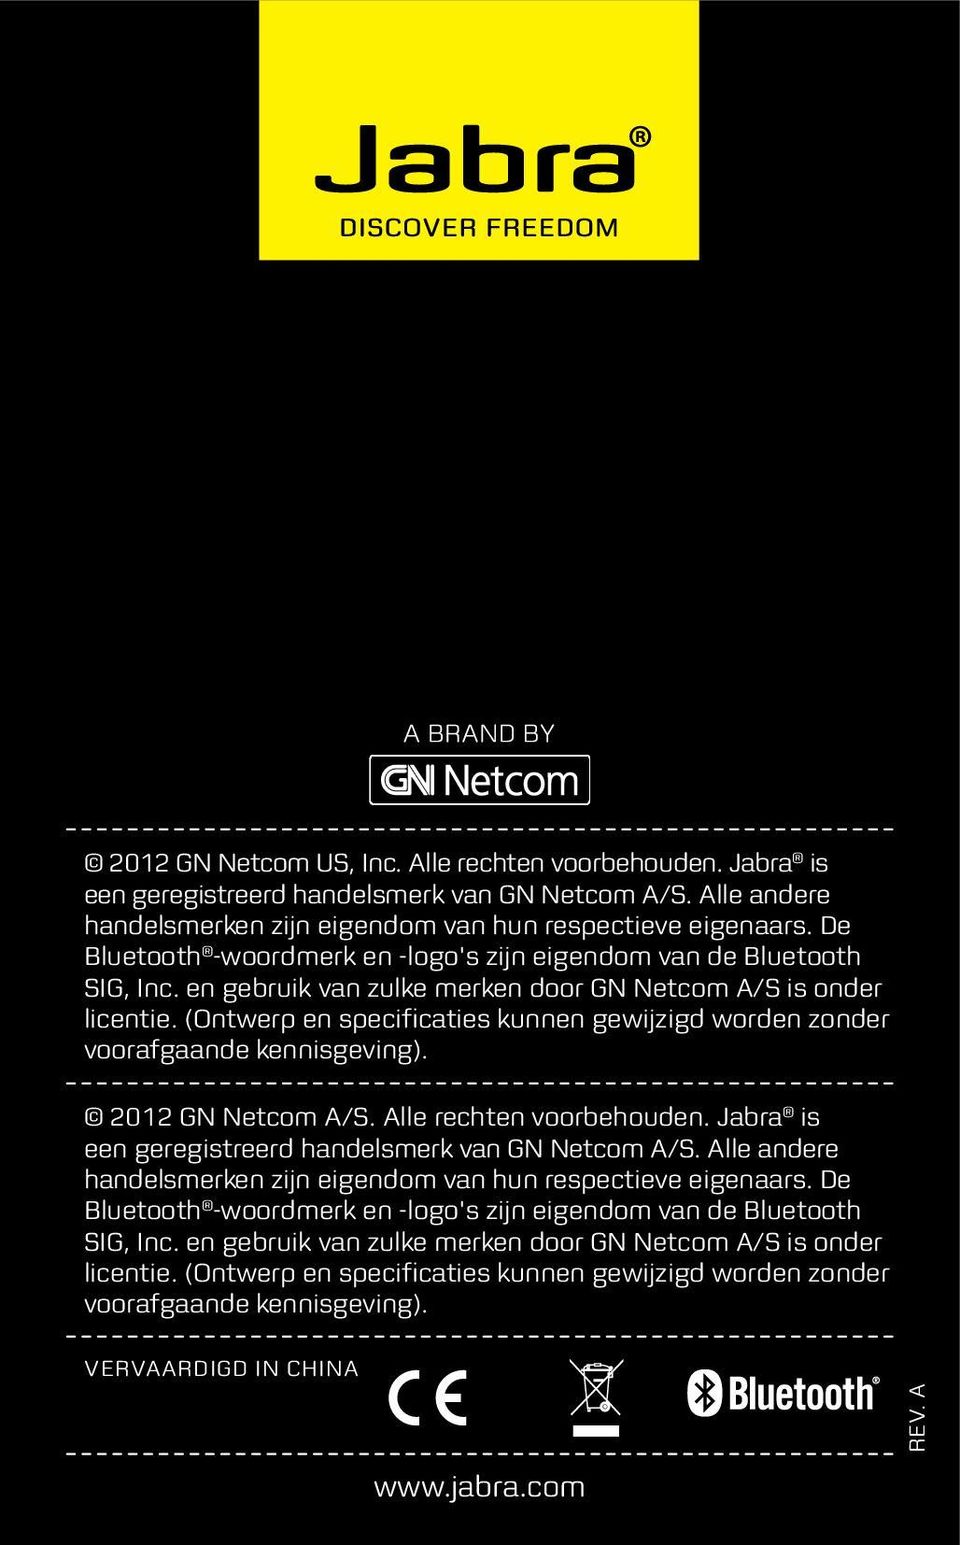 (Ontwerp en specificaties kunnen gewijzigd worden zonder voorafgaande kennisgeving). 2012 GN Netcom A/S. Alle rechten voorbehouden. Jabra is een geregistreerd handelsmerk van GN Netcom A/S.